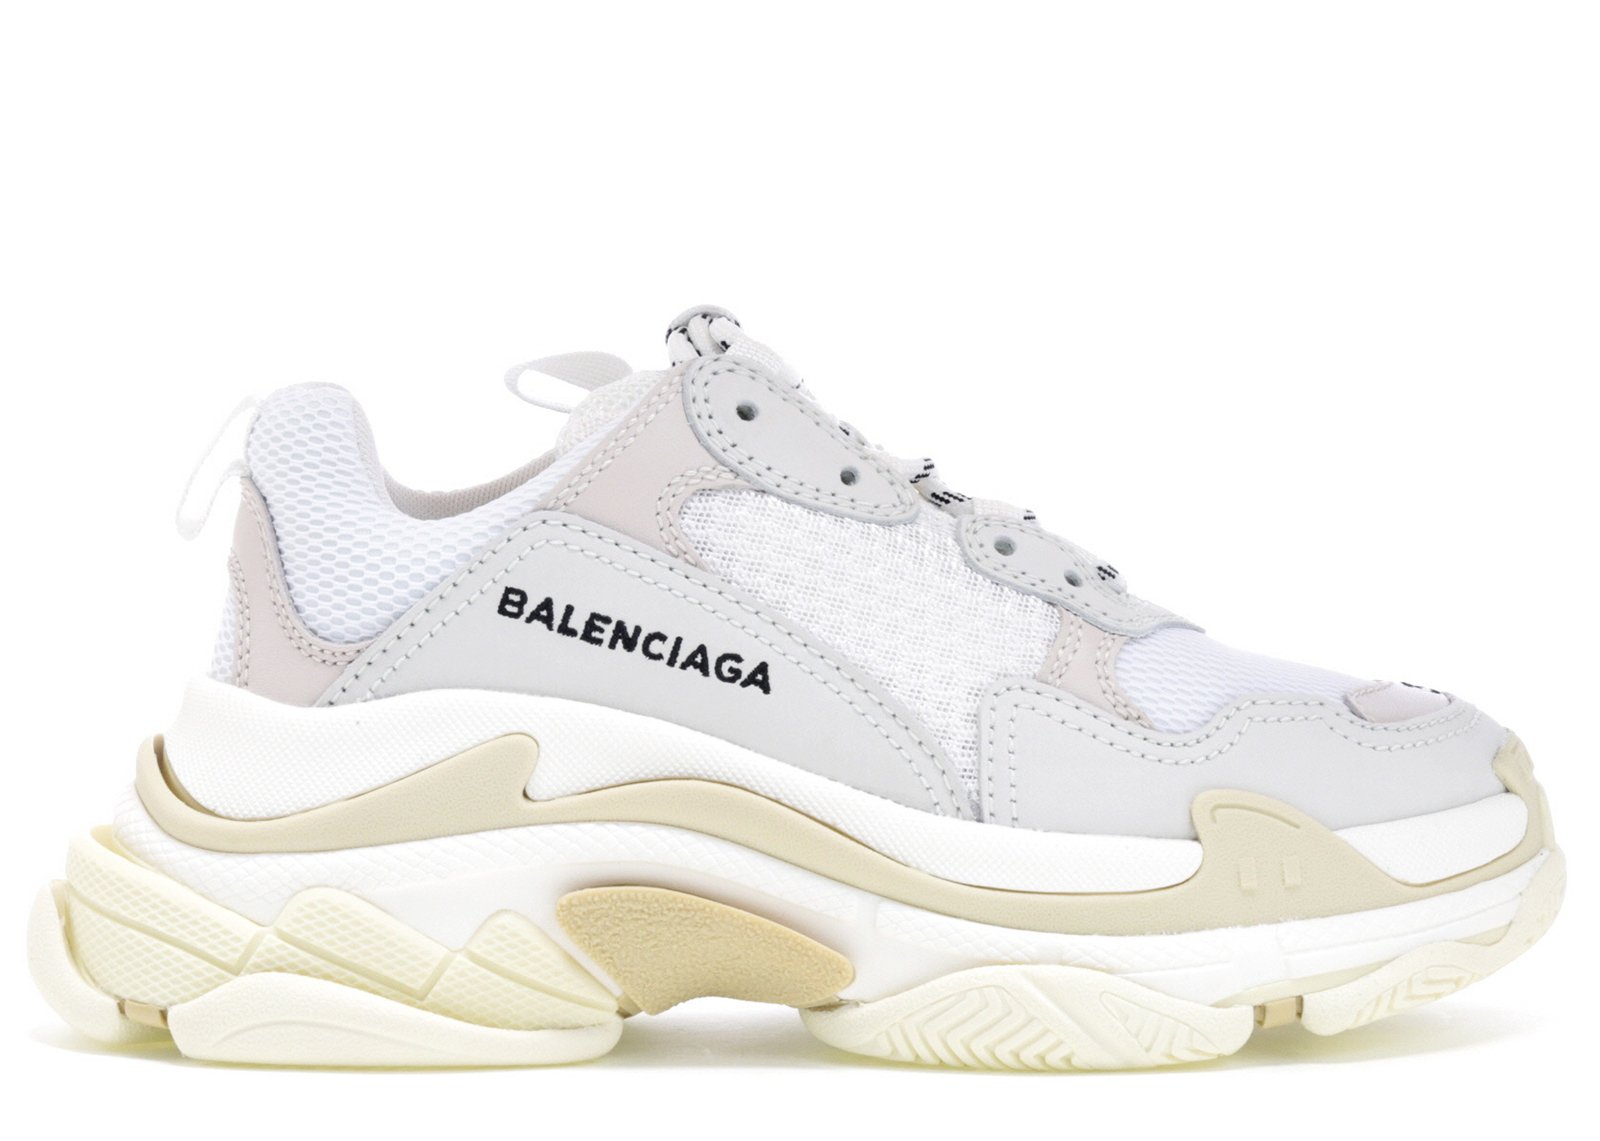 sneakers Balenciaga Triple S White (W) (2018 Reissue)